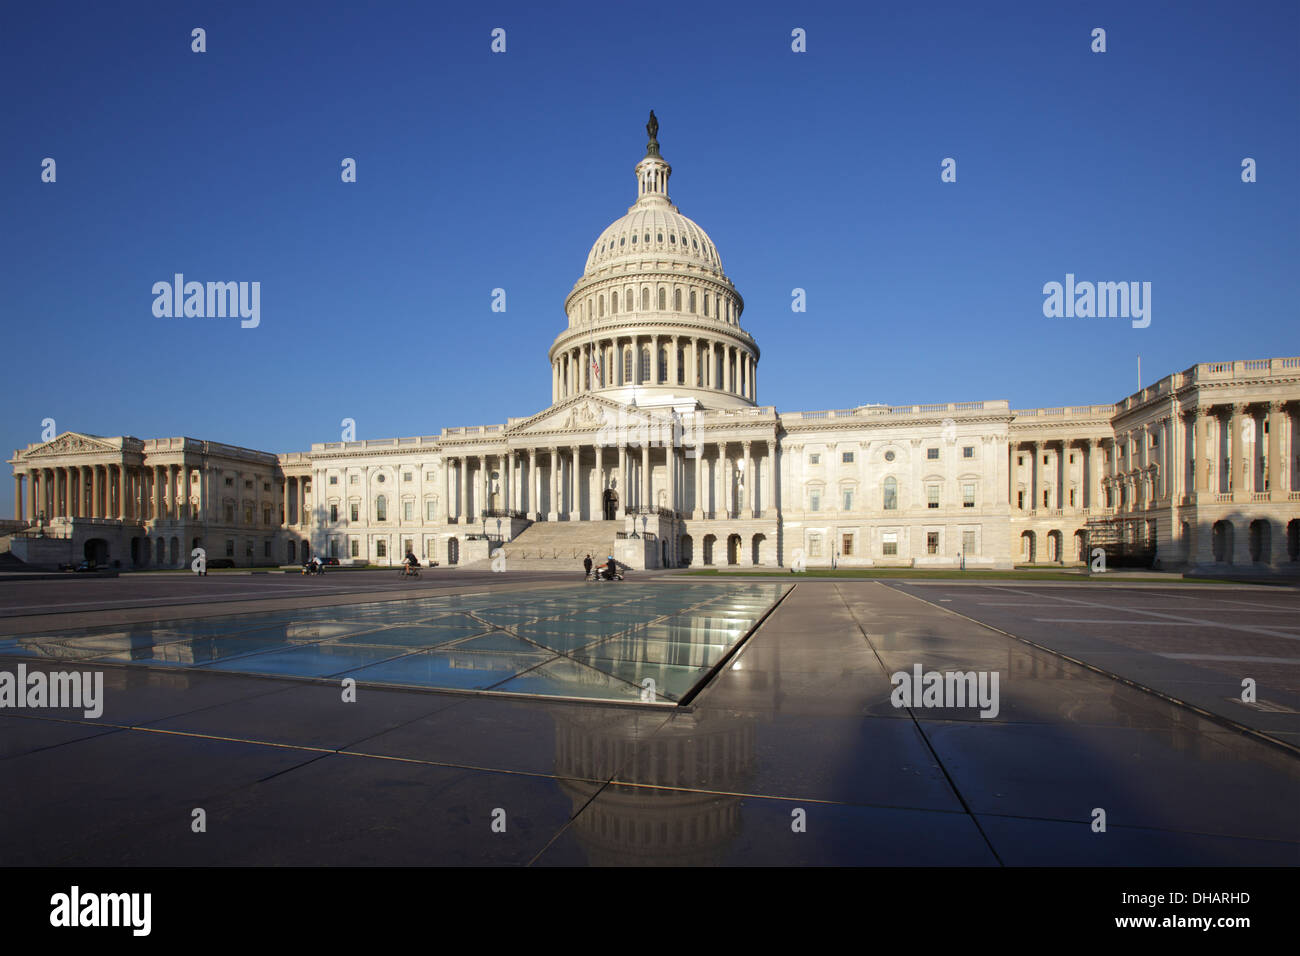 United States Capitol, Washington D.C., USA Stock Photo